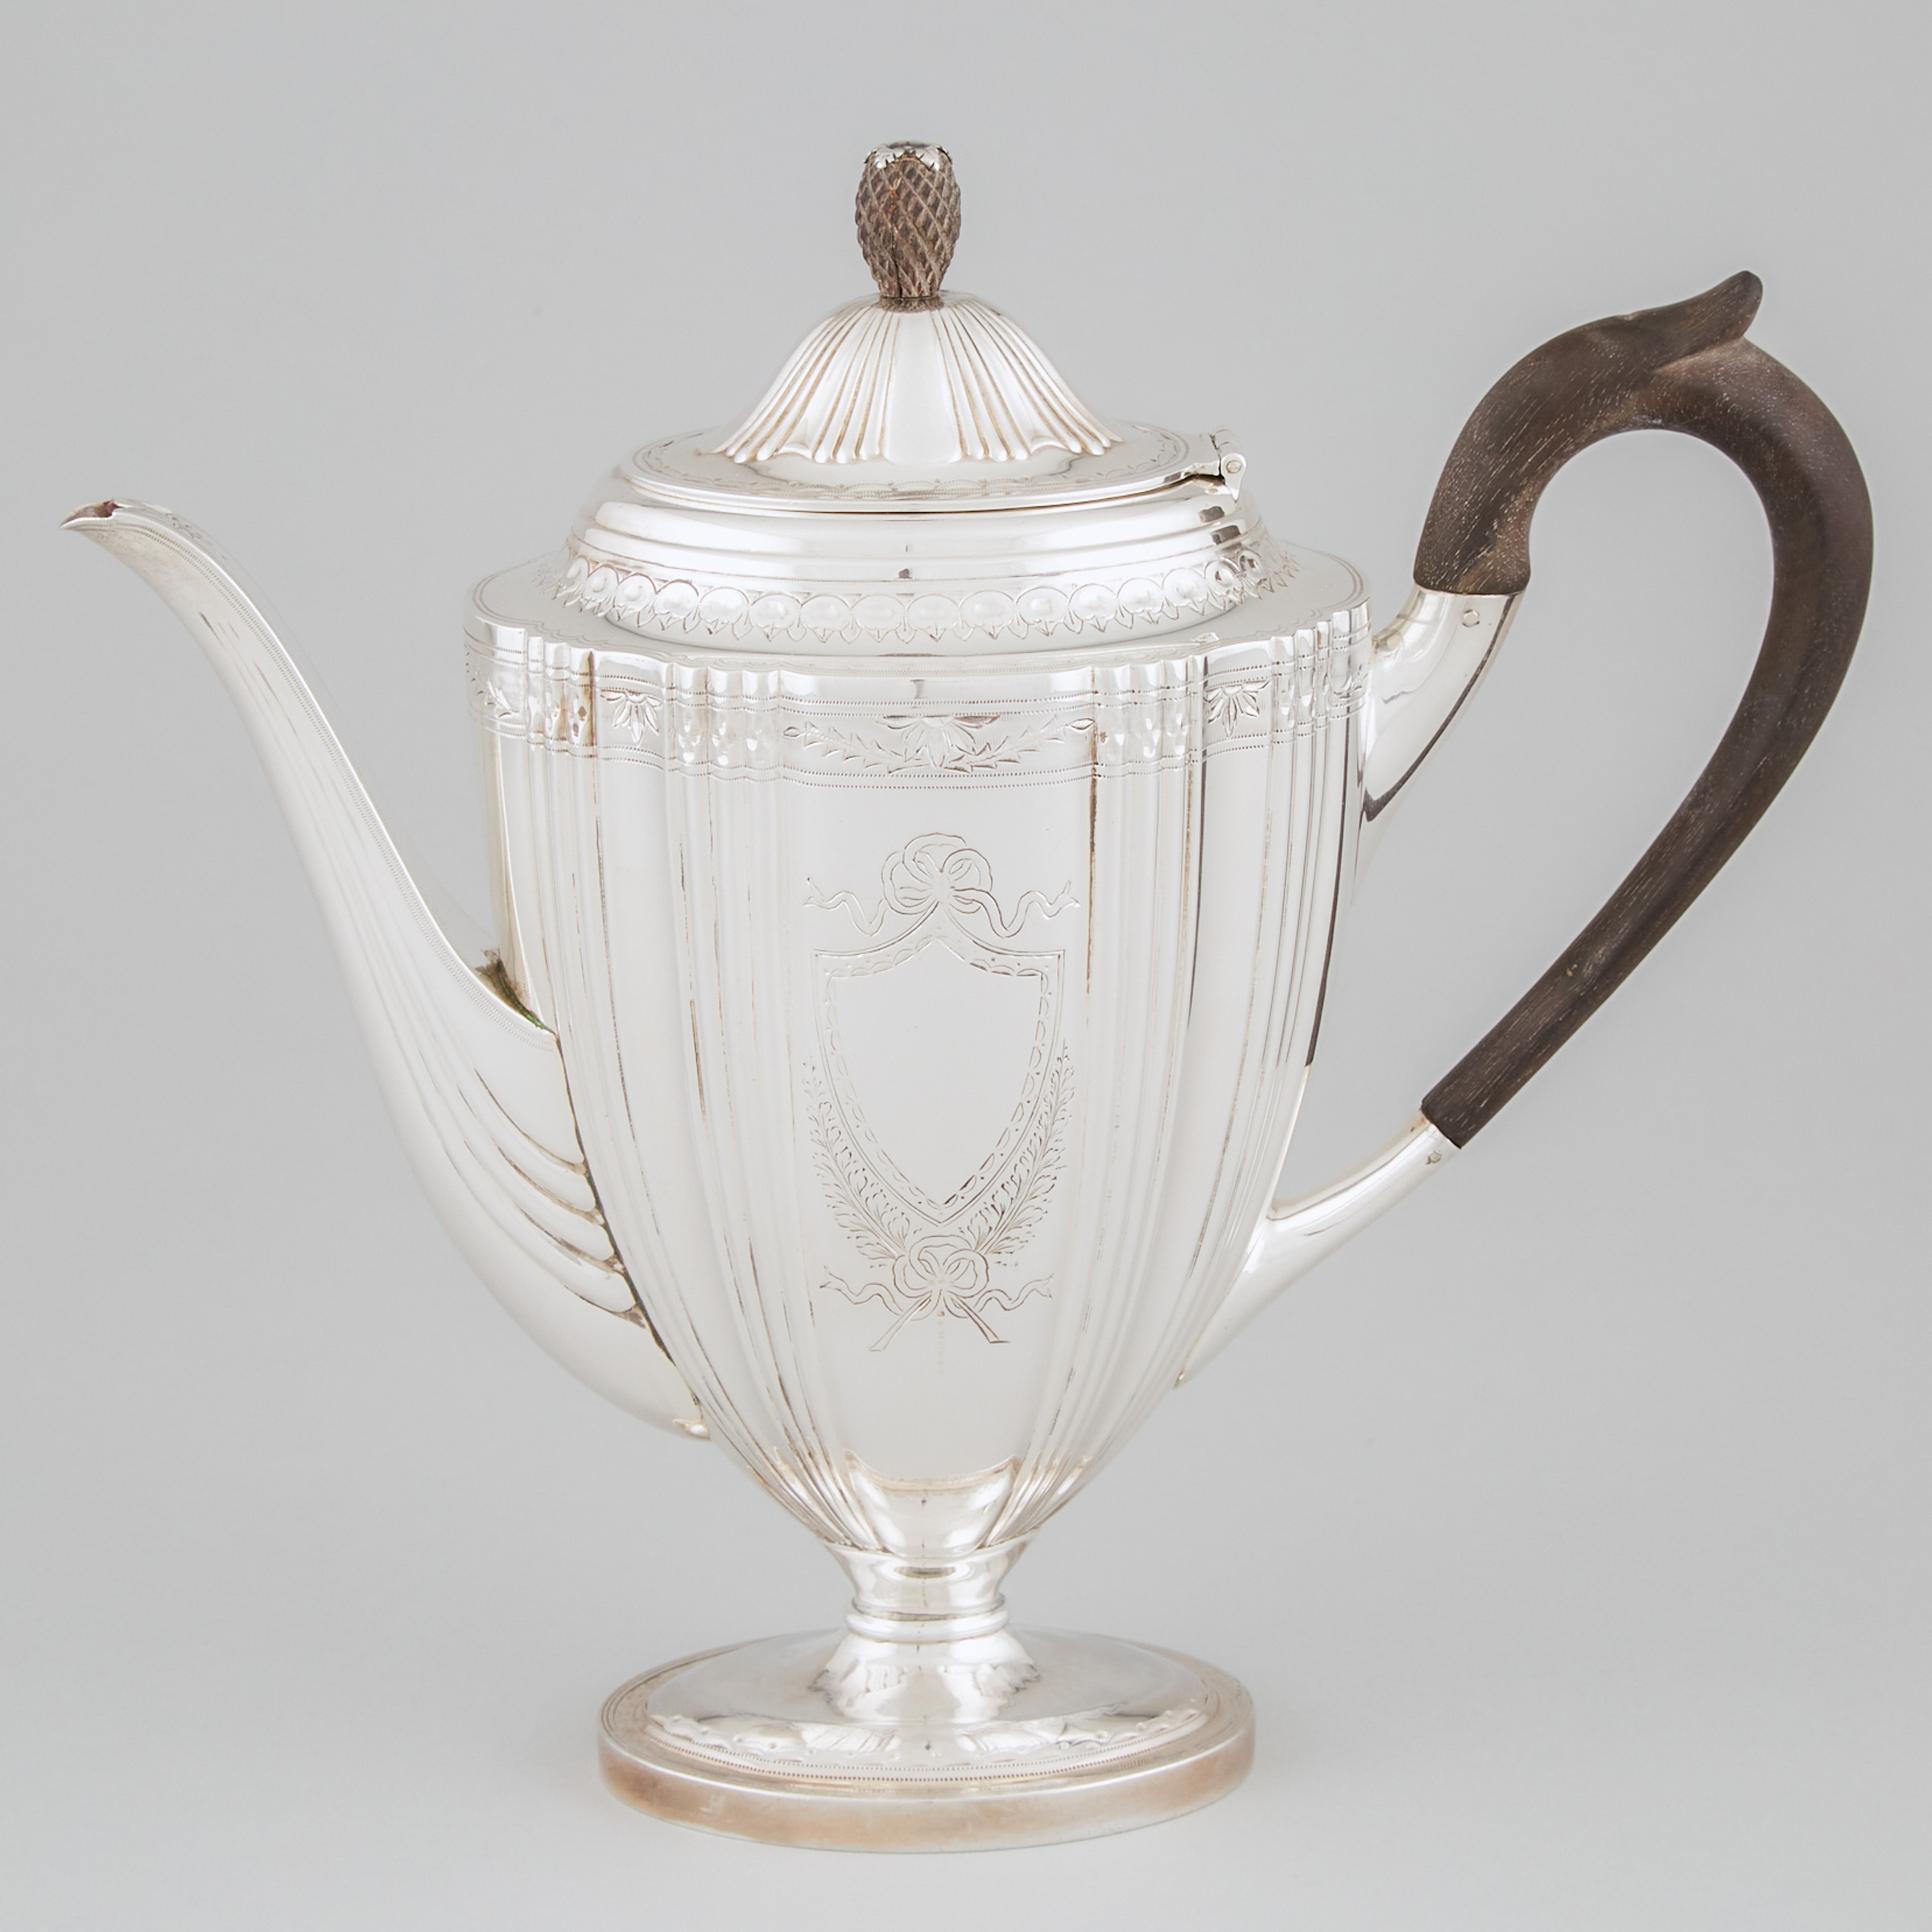 Victorian Silver Coffee Pot, Jane Brownett, London, 1883